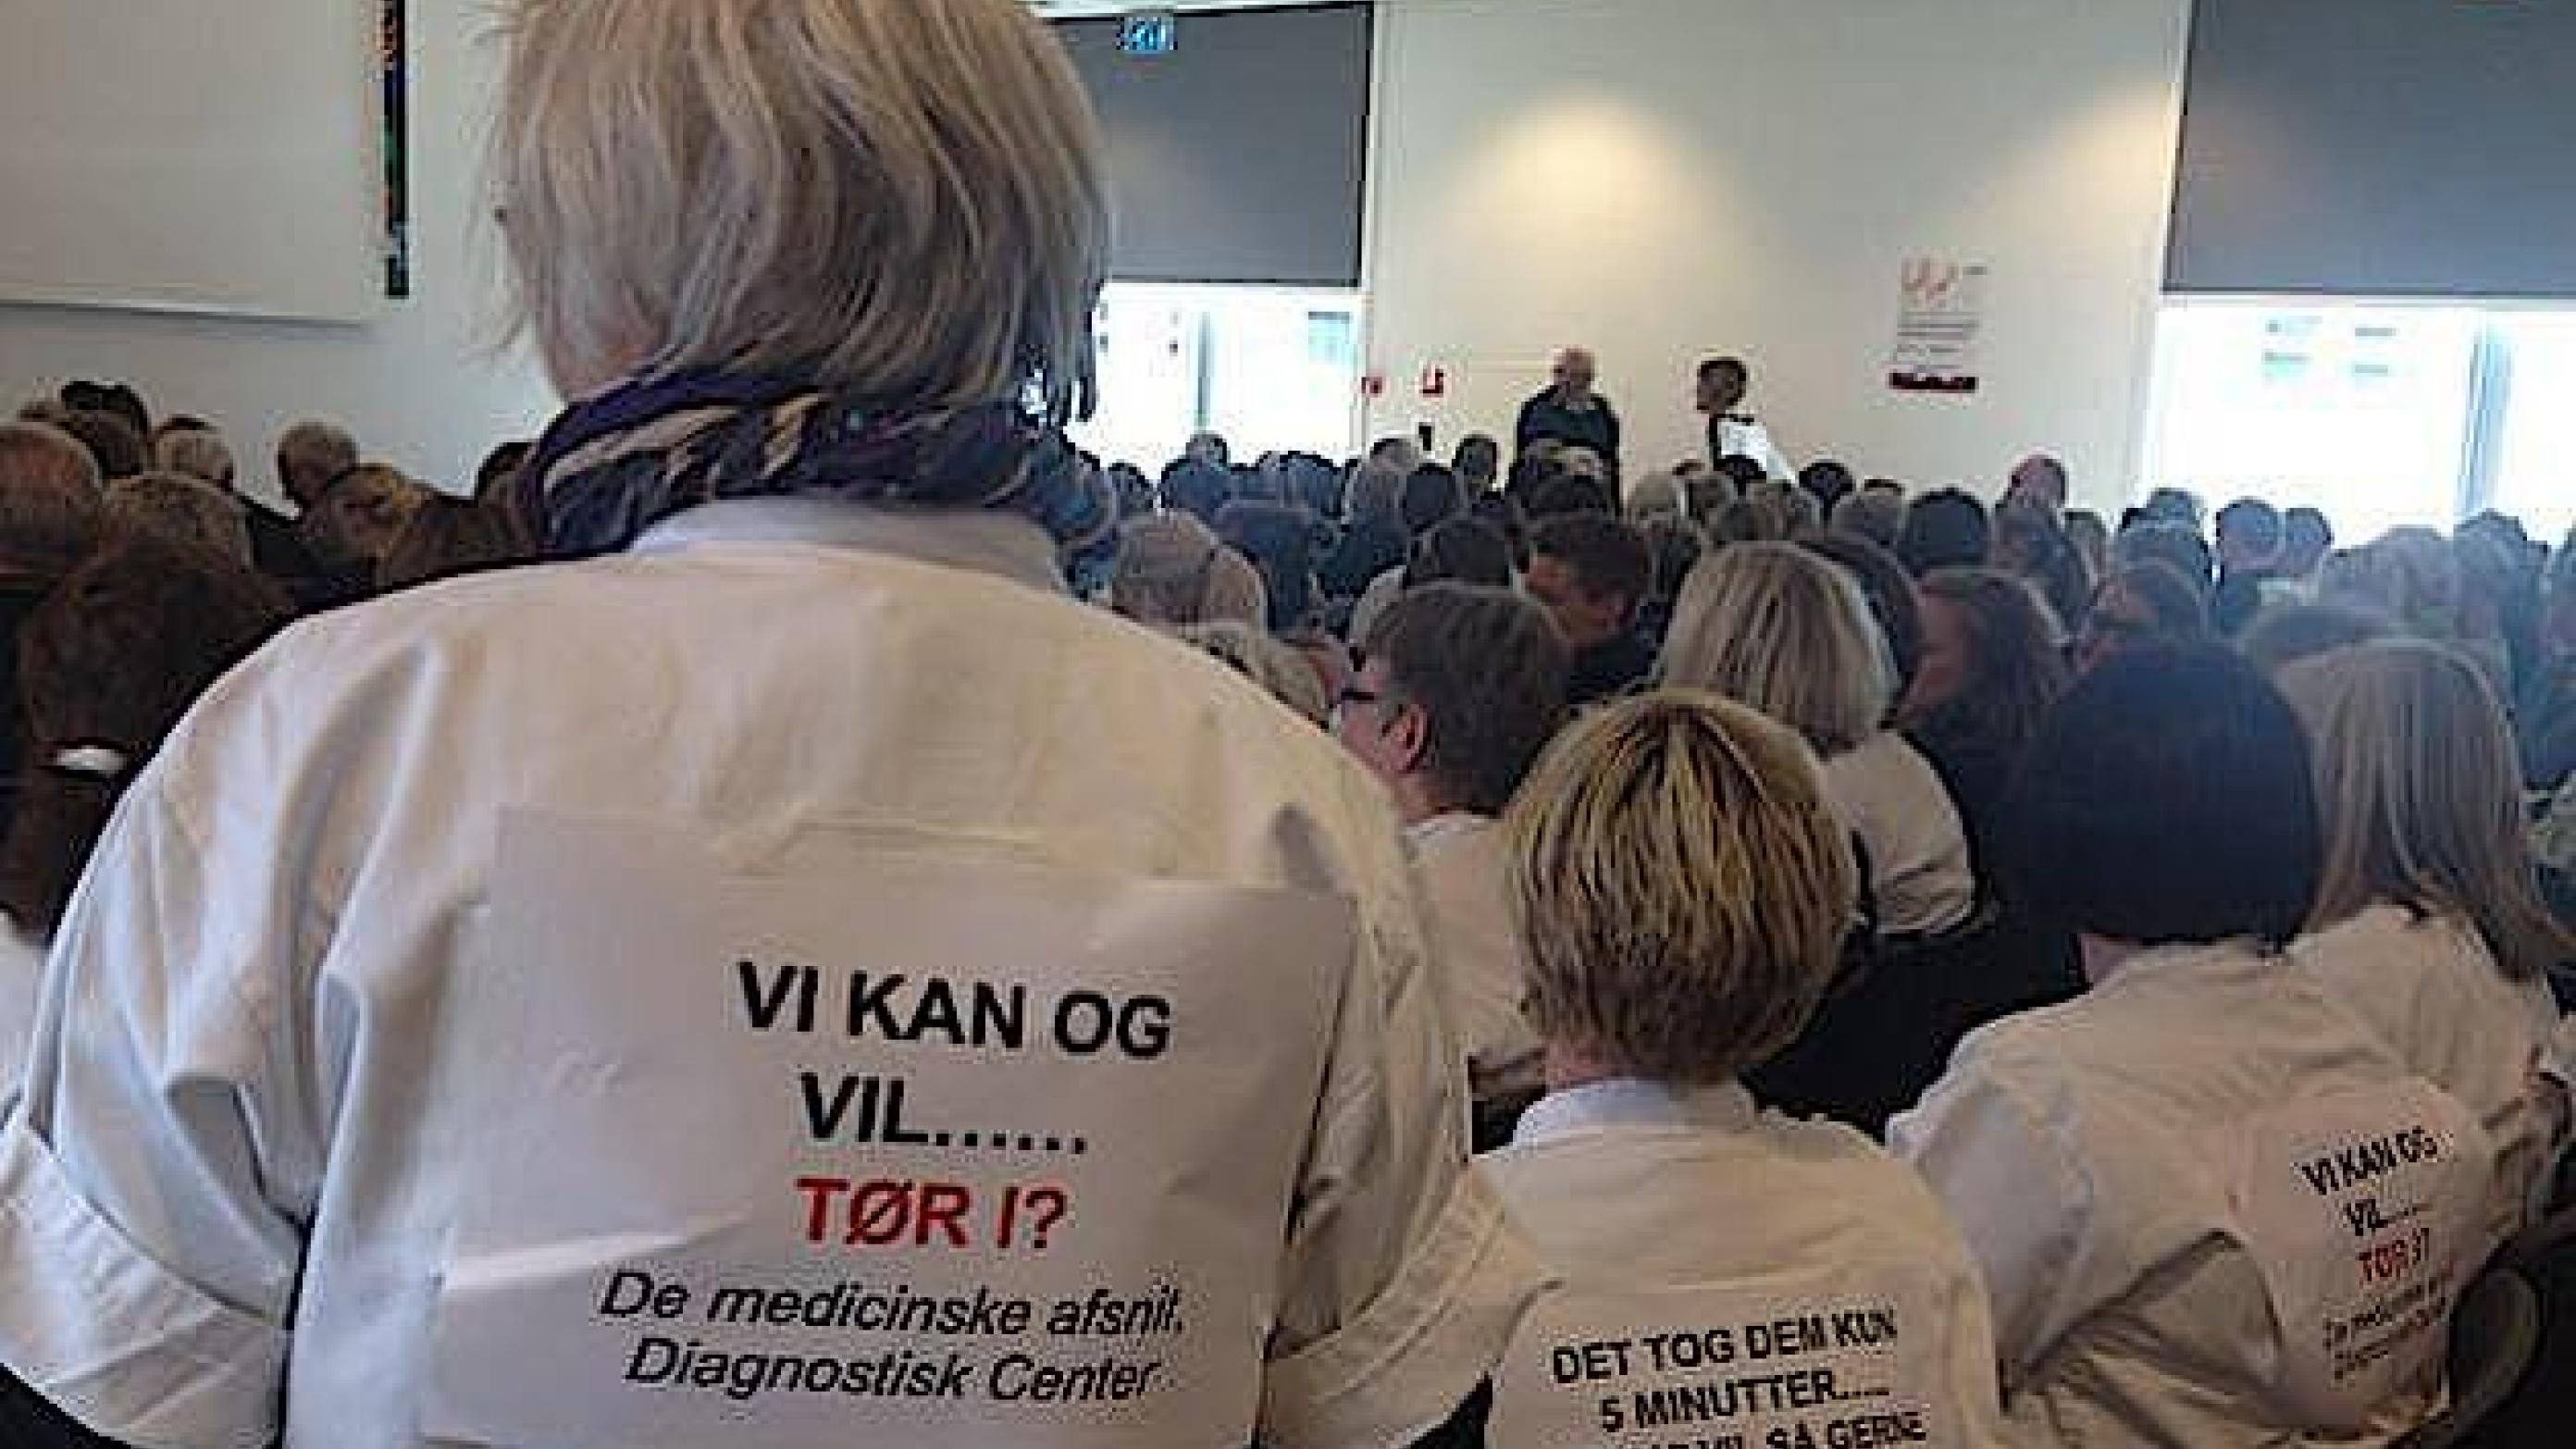 Lægeforeningen Midtjylland kritiserer Region Midtjyllands spareplan, som også har ført til store protester lokalt. Her er det i Silkeborg. Foto: Kurt Balle Jensen.